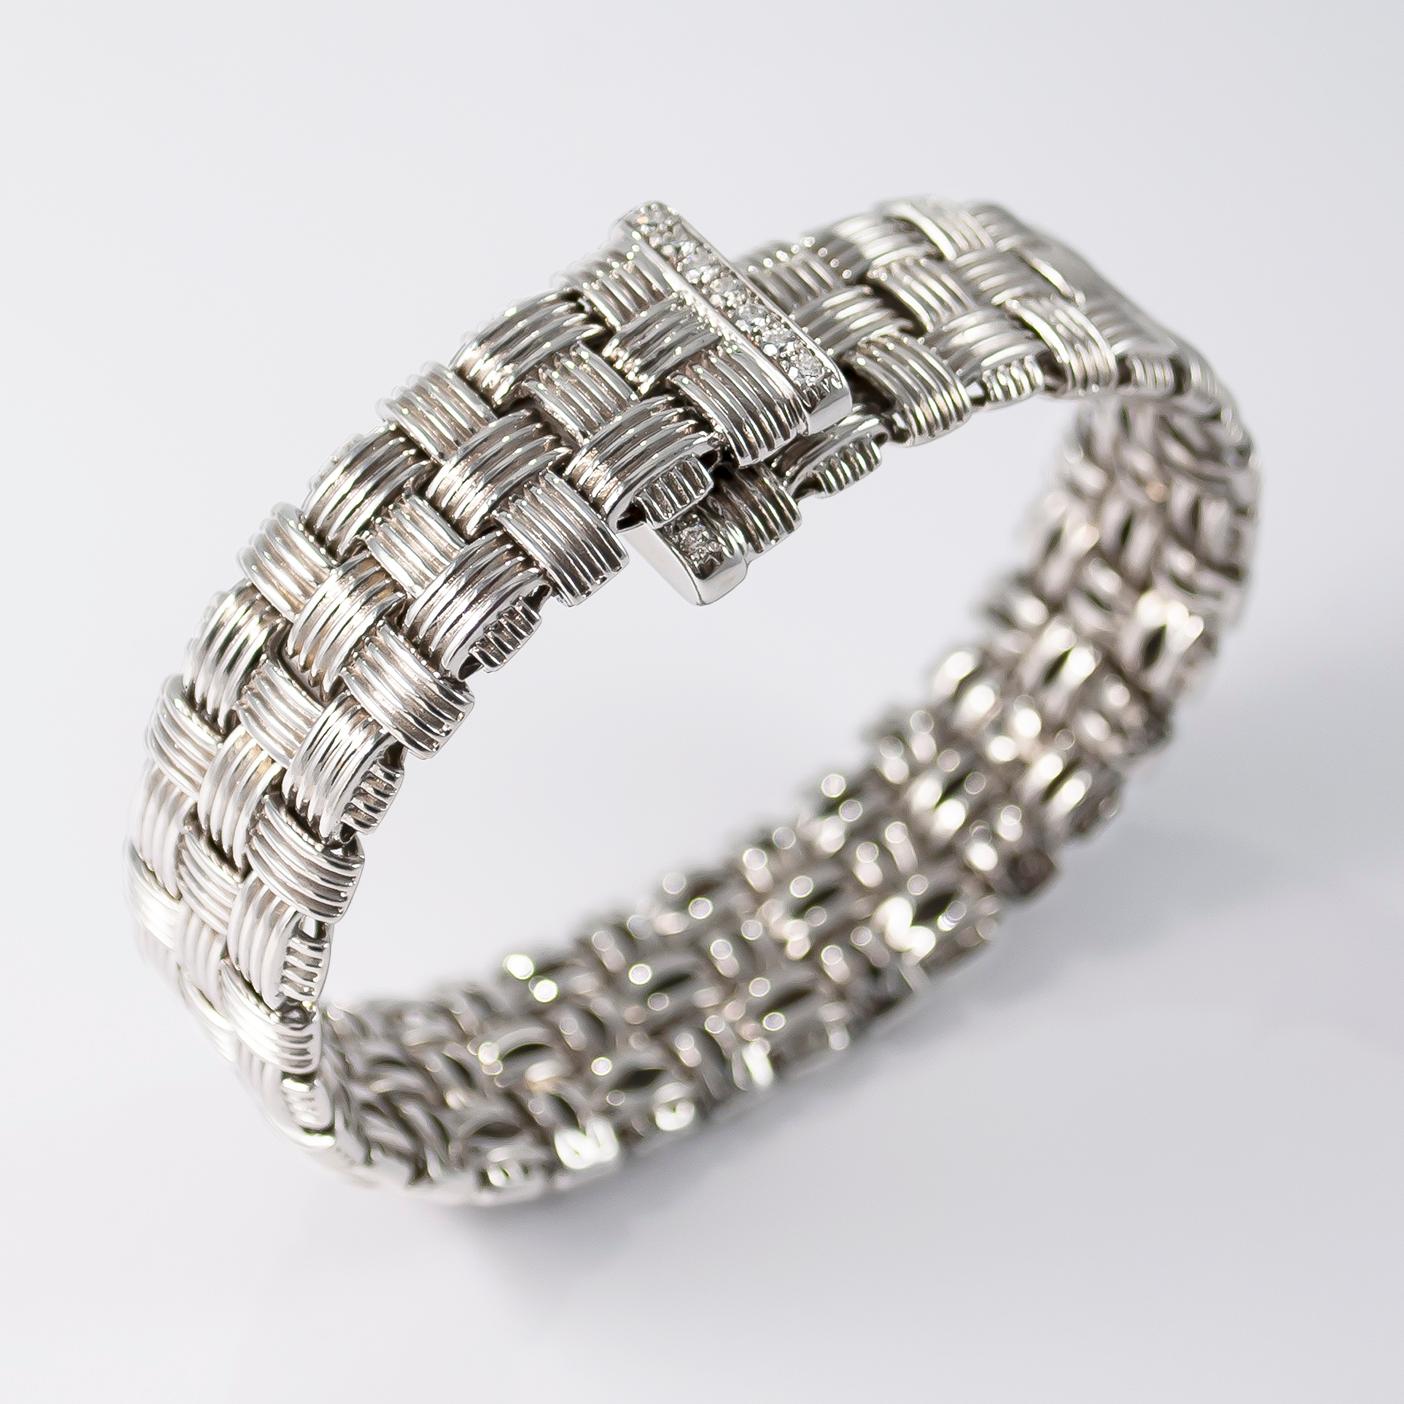 Roberto Coin Appassionata Three-Row Bracelet with Diamonds (Zeitgenössisch)